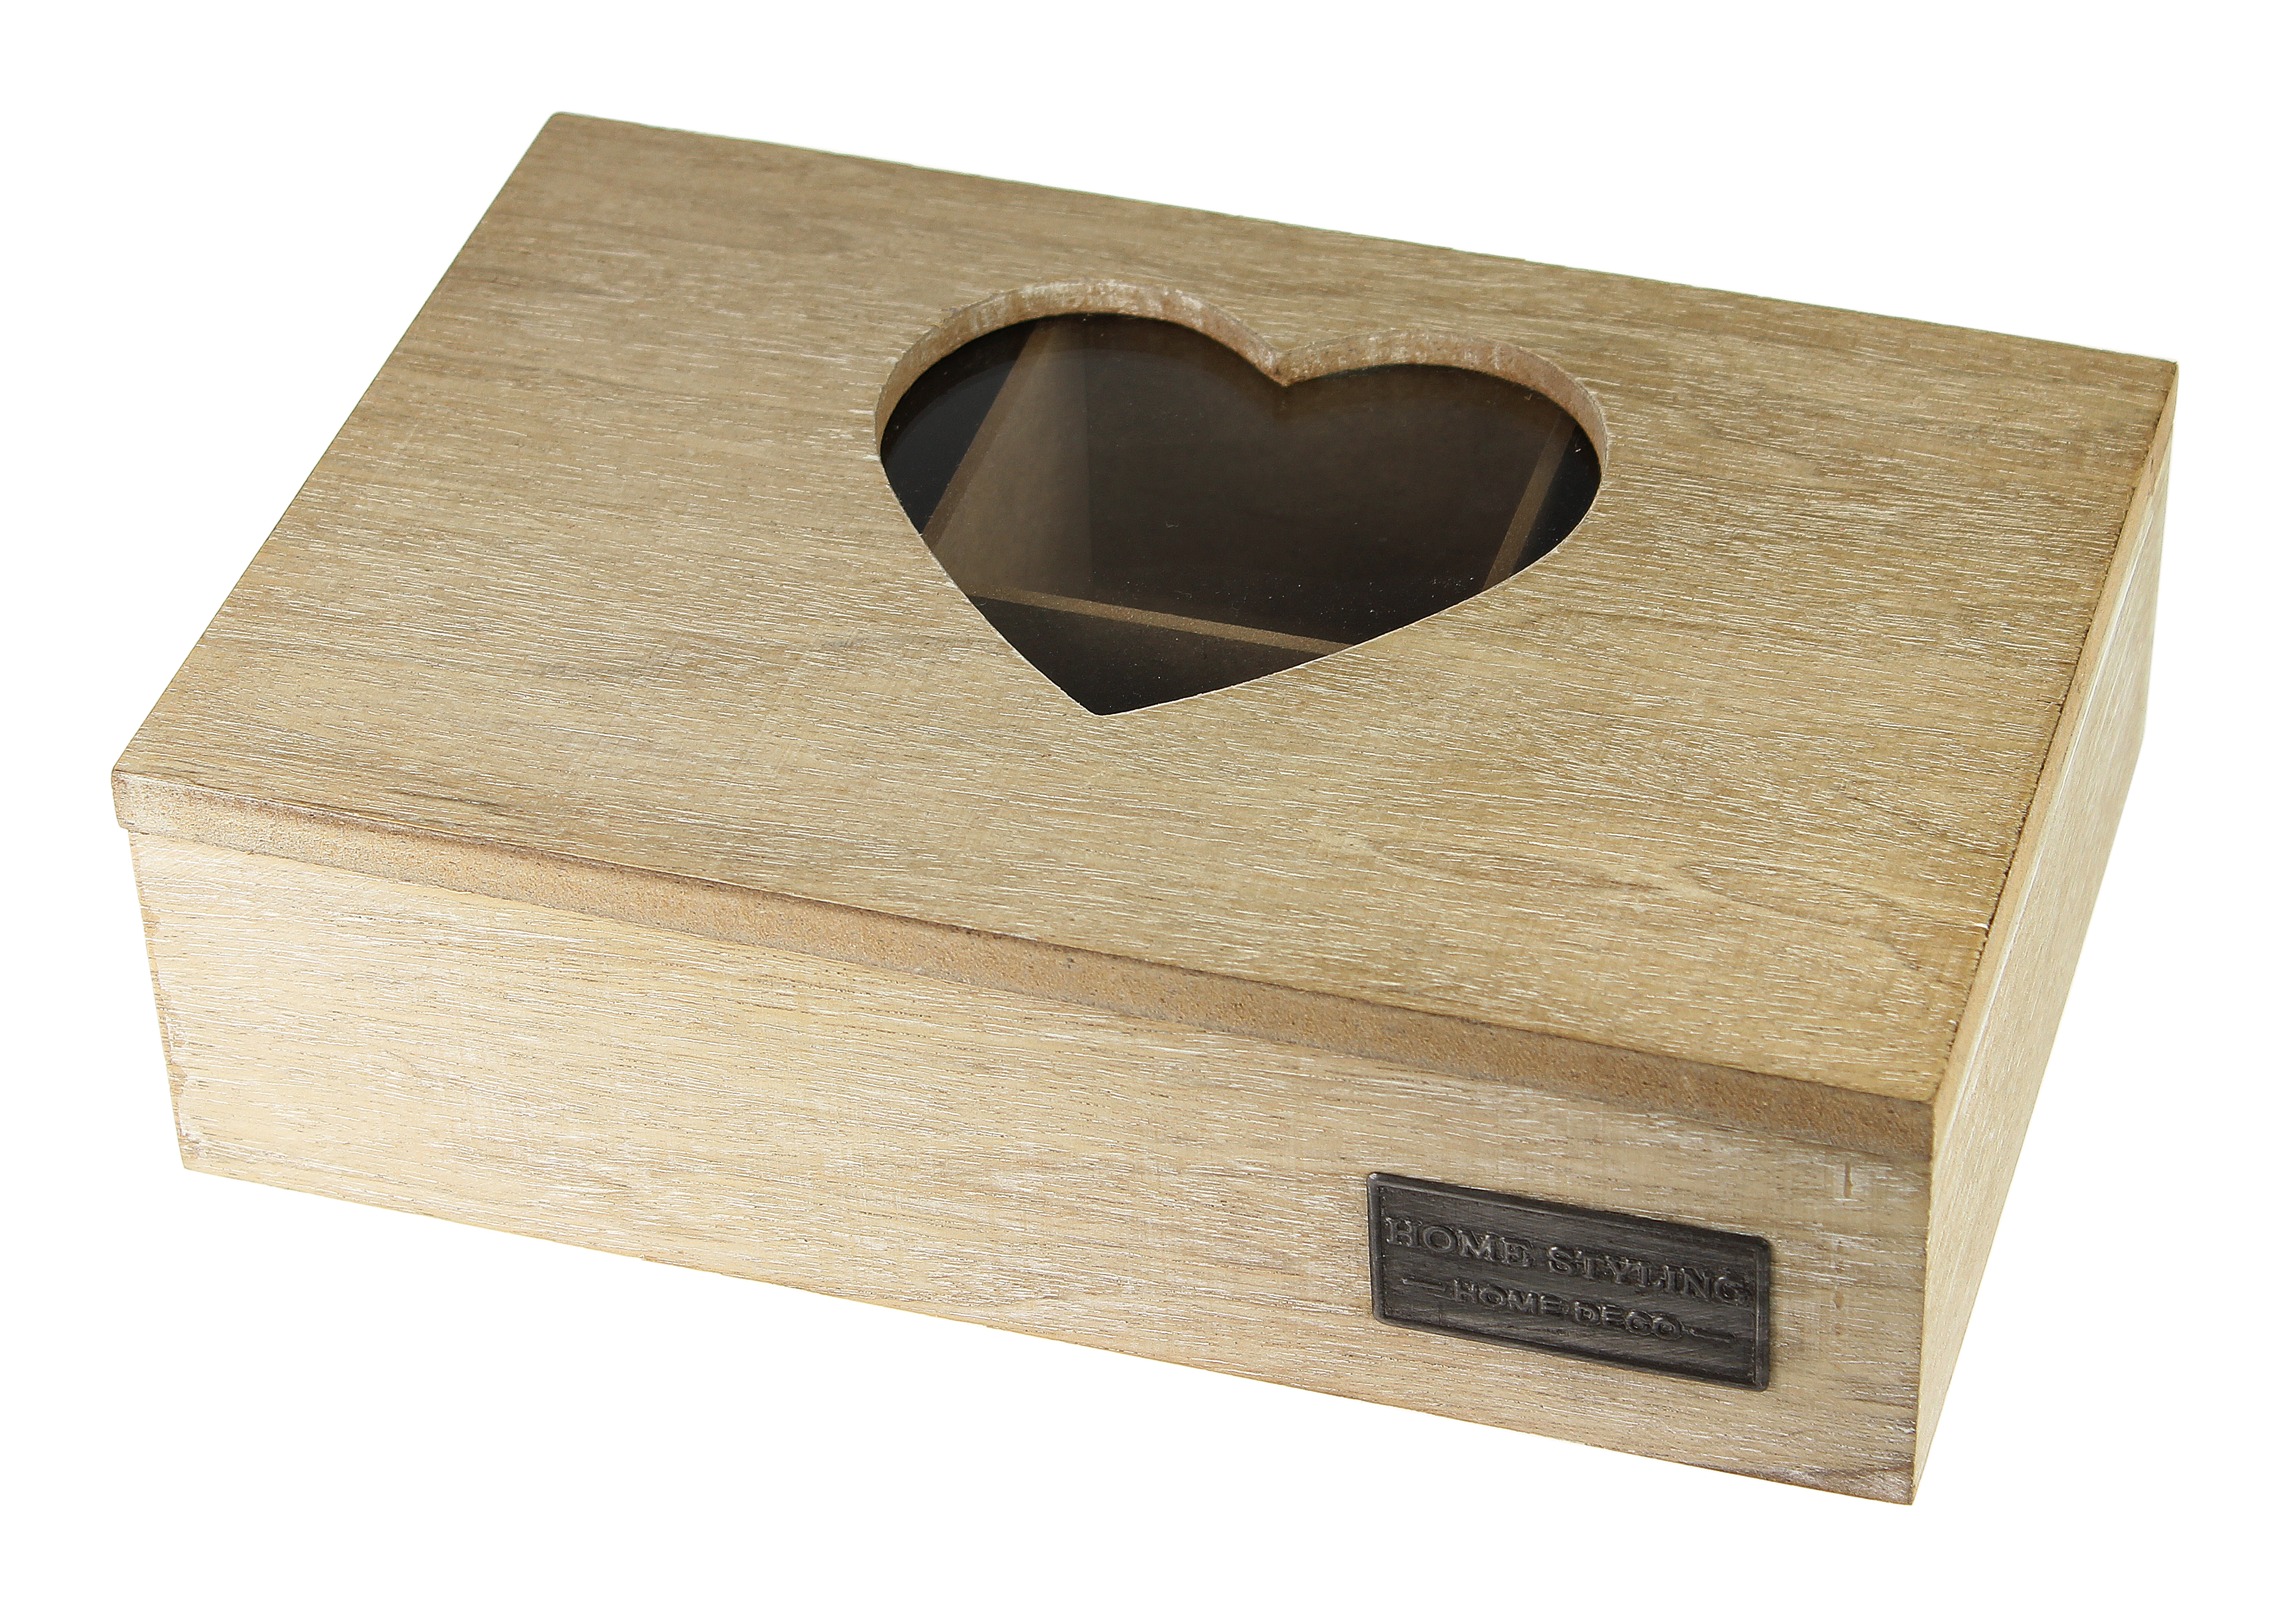 Holz Teebox mit Herz